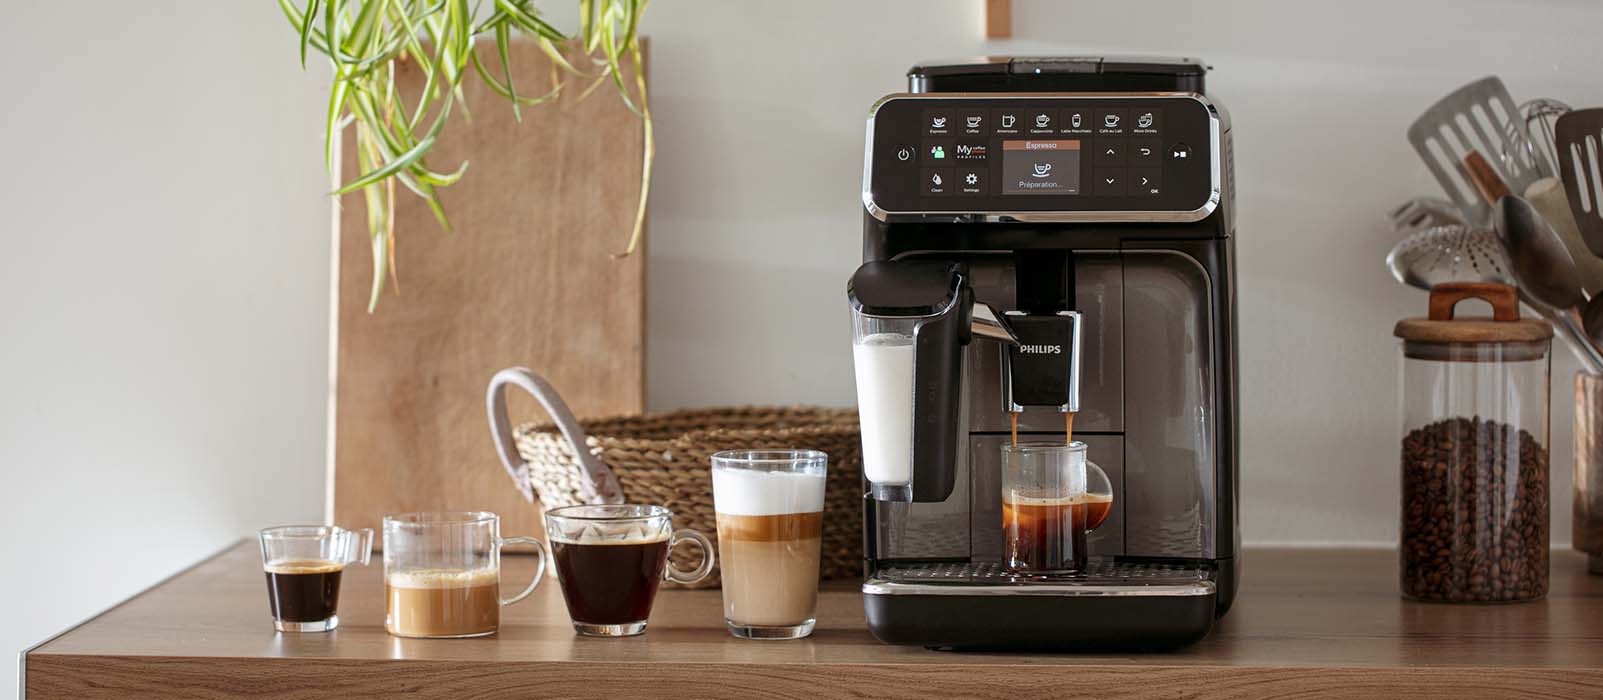 Les 7 meilleures machines à café pour jouer les baristas à la